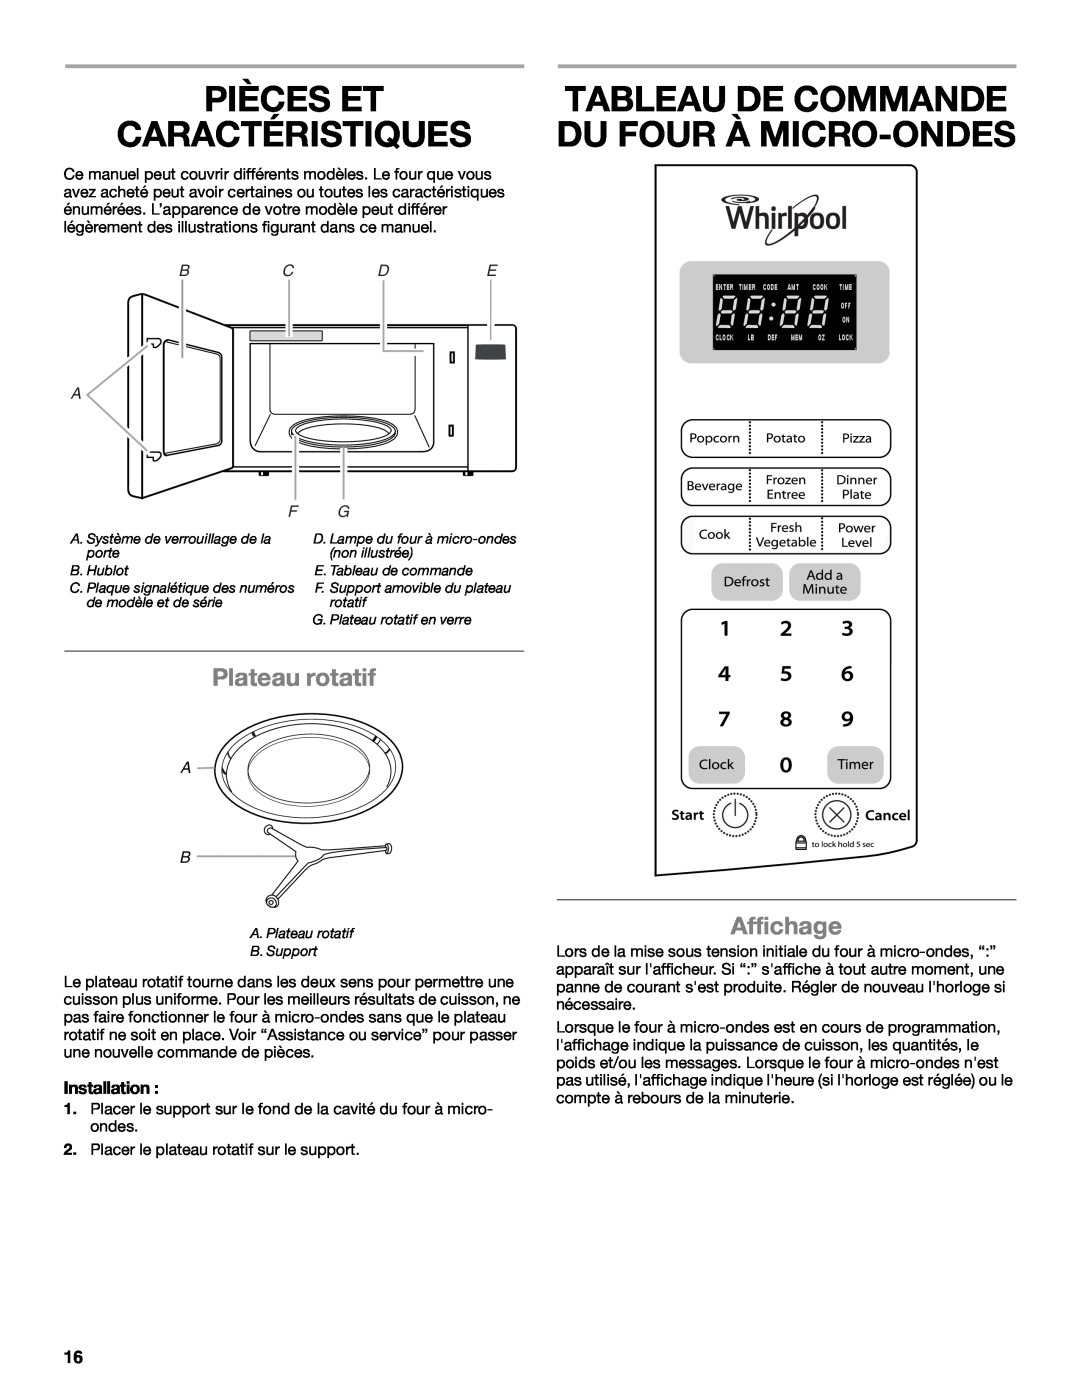 Whirlpool WMC10007 manual Pièces Et Caractéristiques, Tableau De Commande Du Four À Micro-Ondes, Plateau rotatif, Affichage 